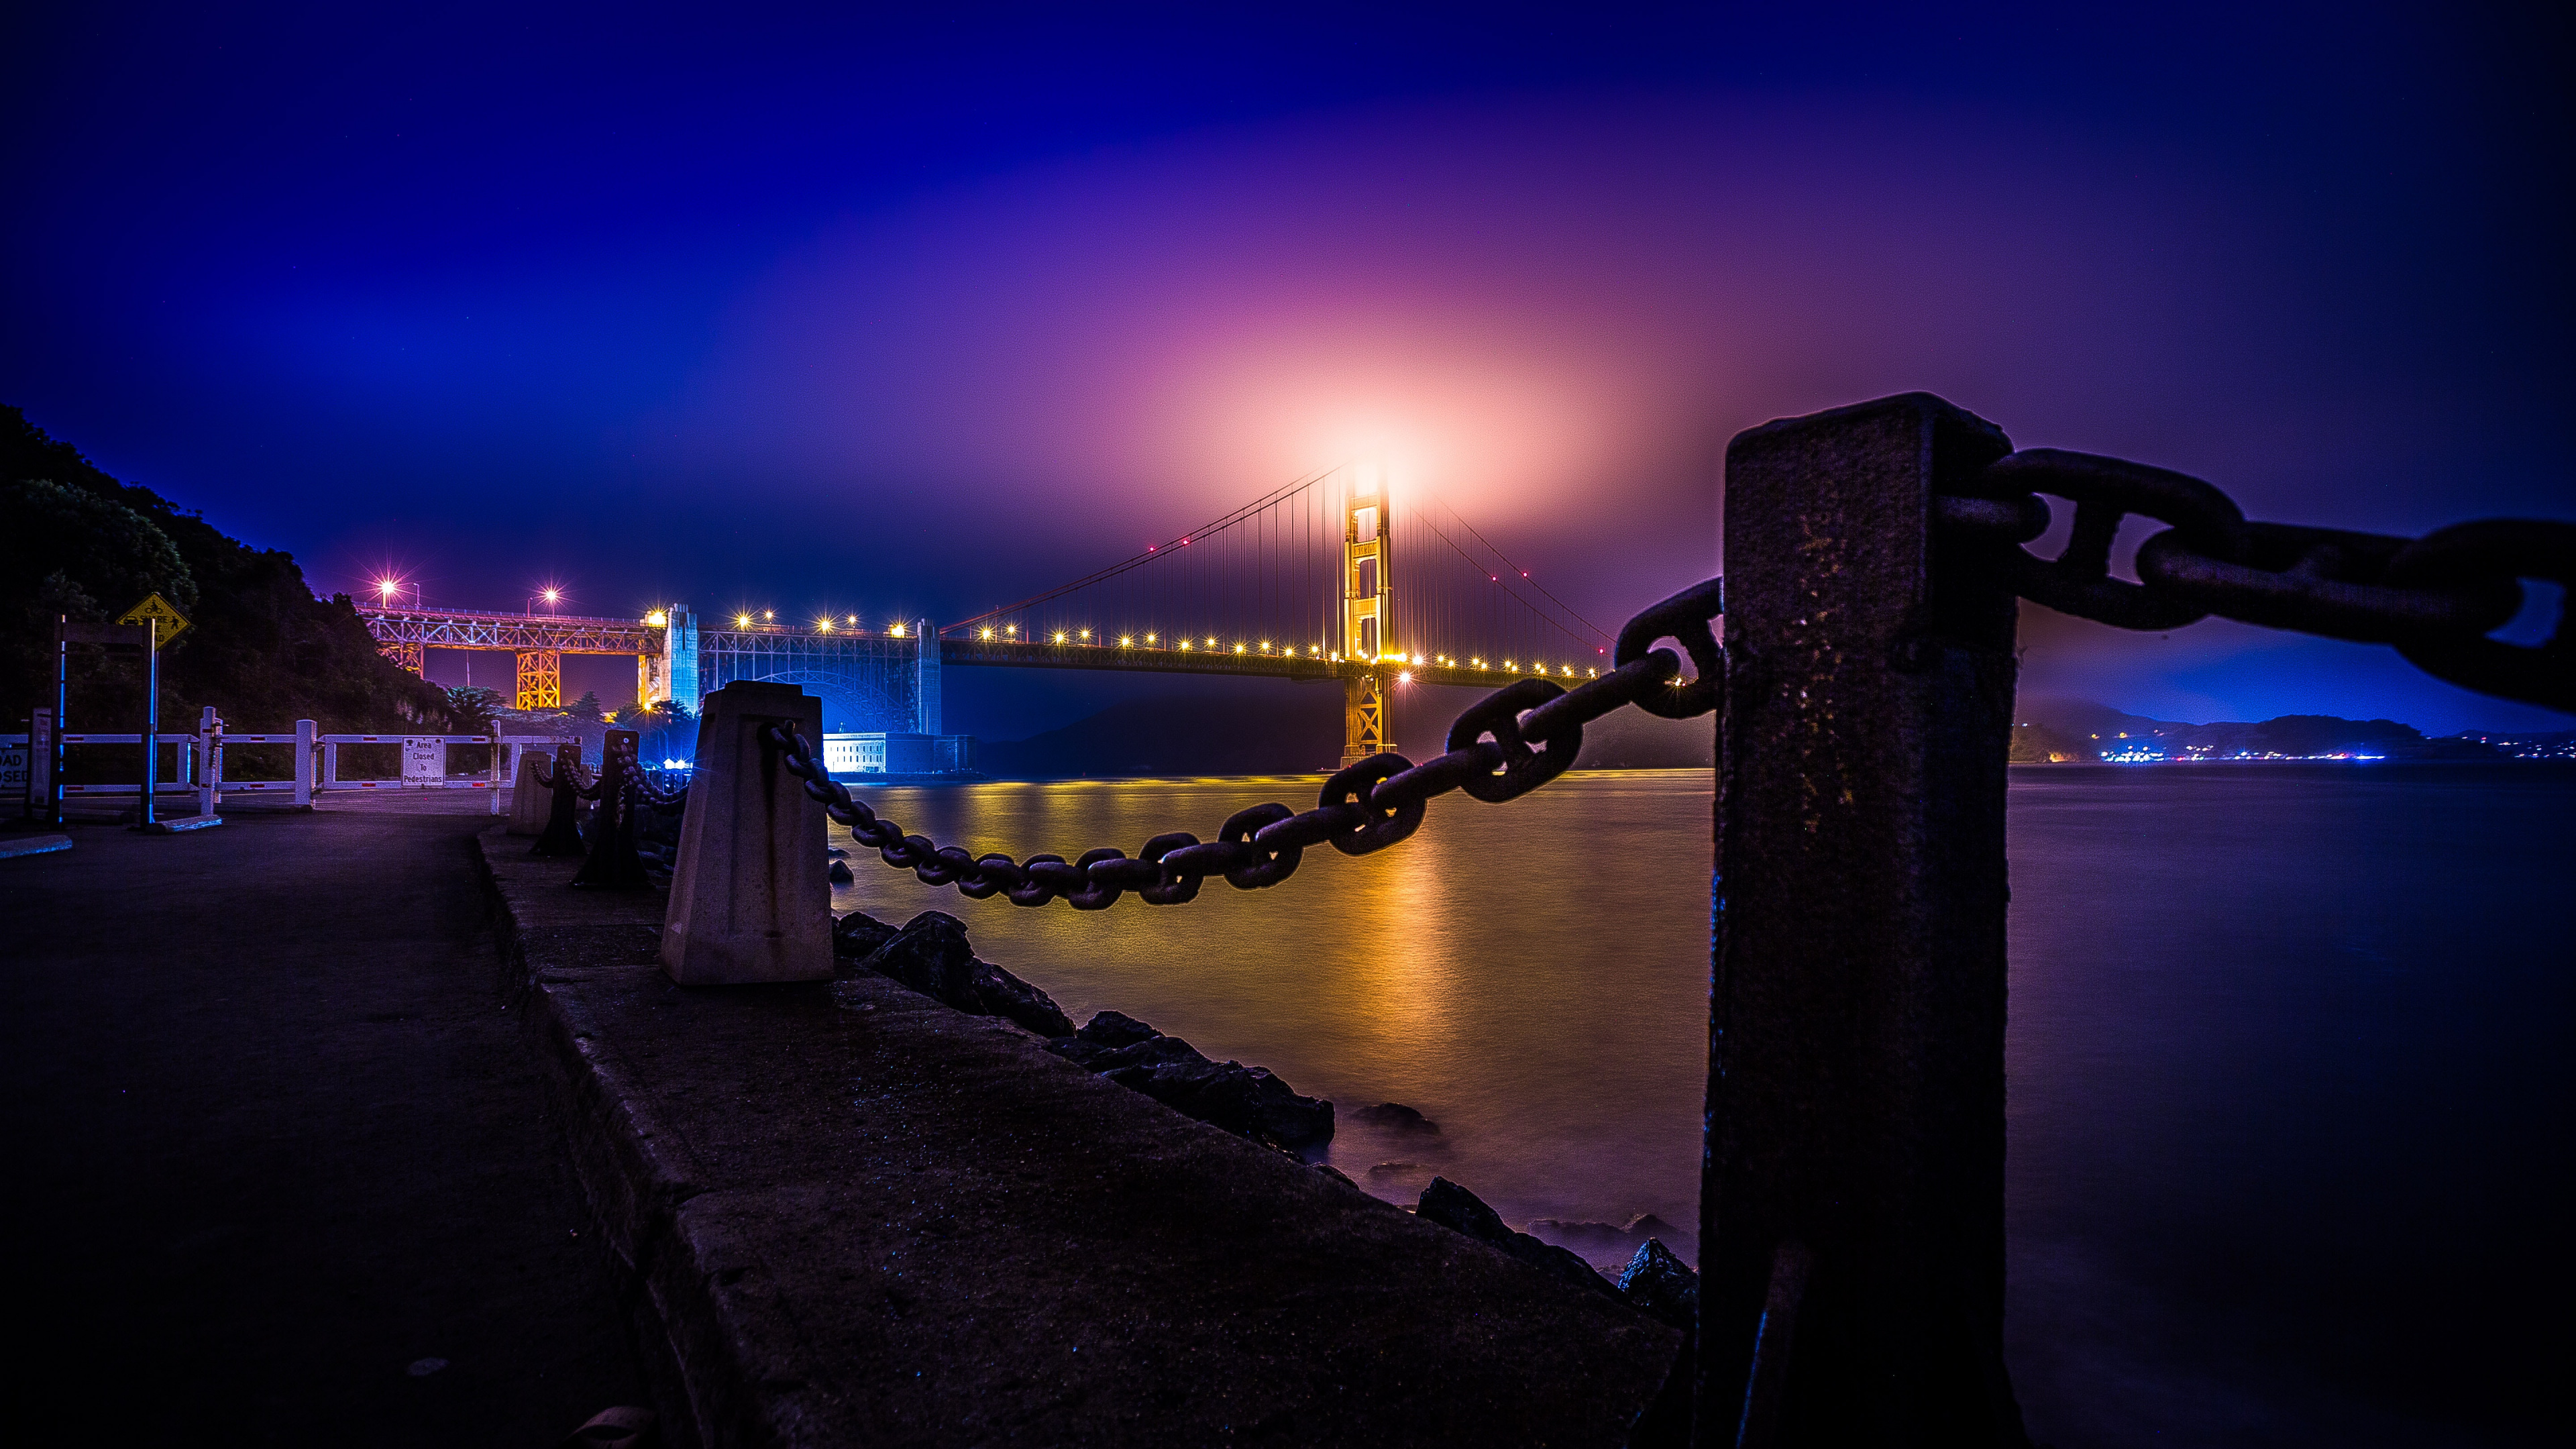 Gente Caminando en el Puente Durante la Noche. Wallpaper in 3840x2160 Resolution